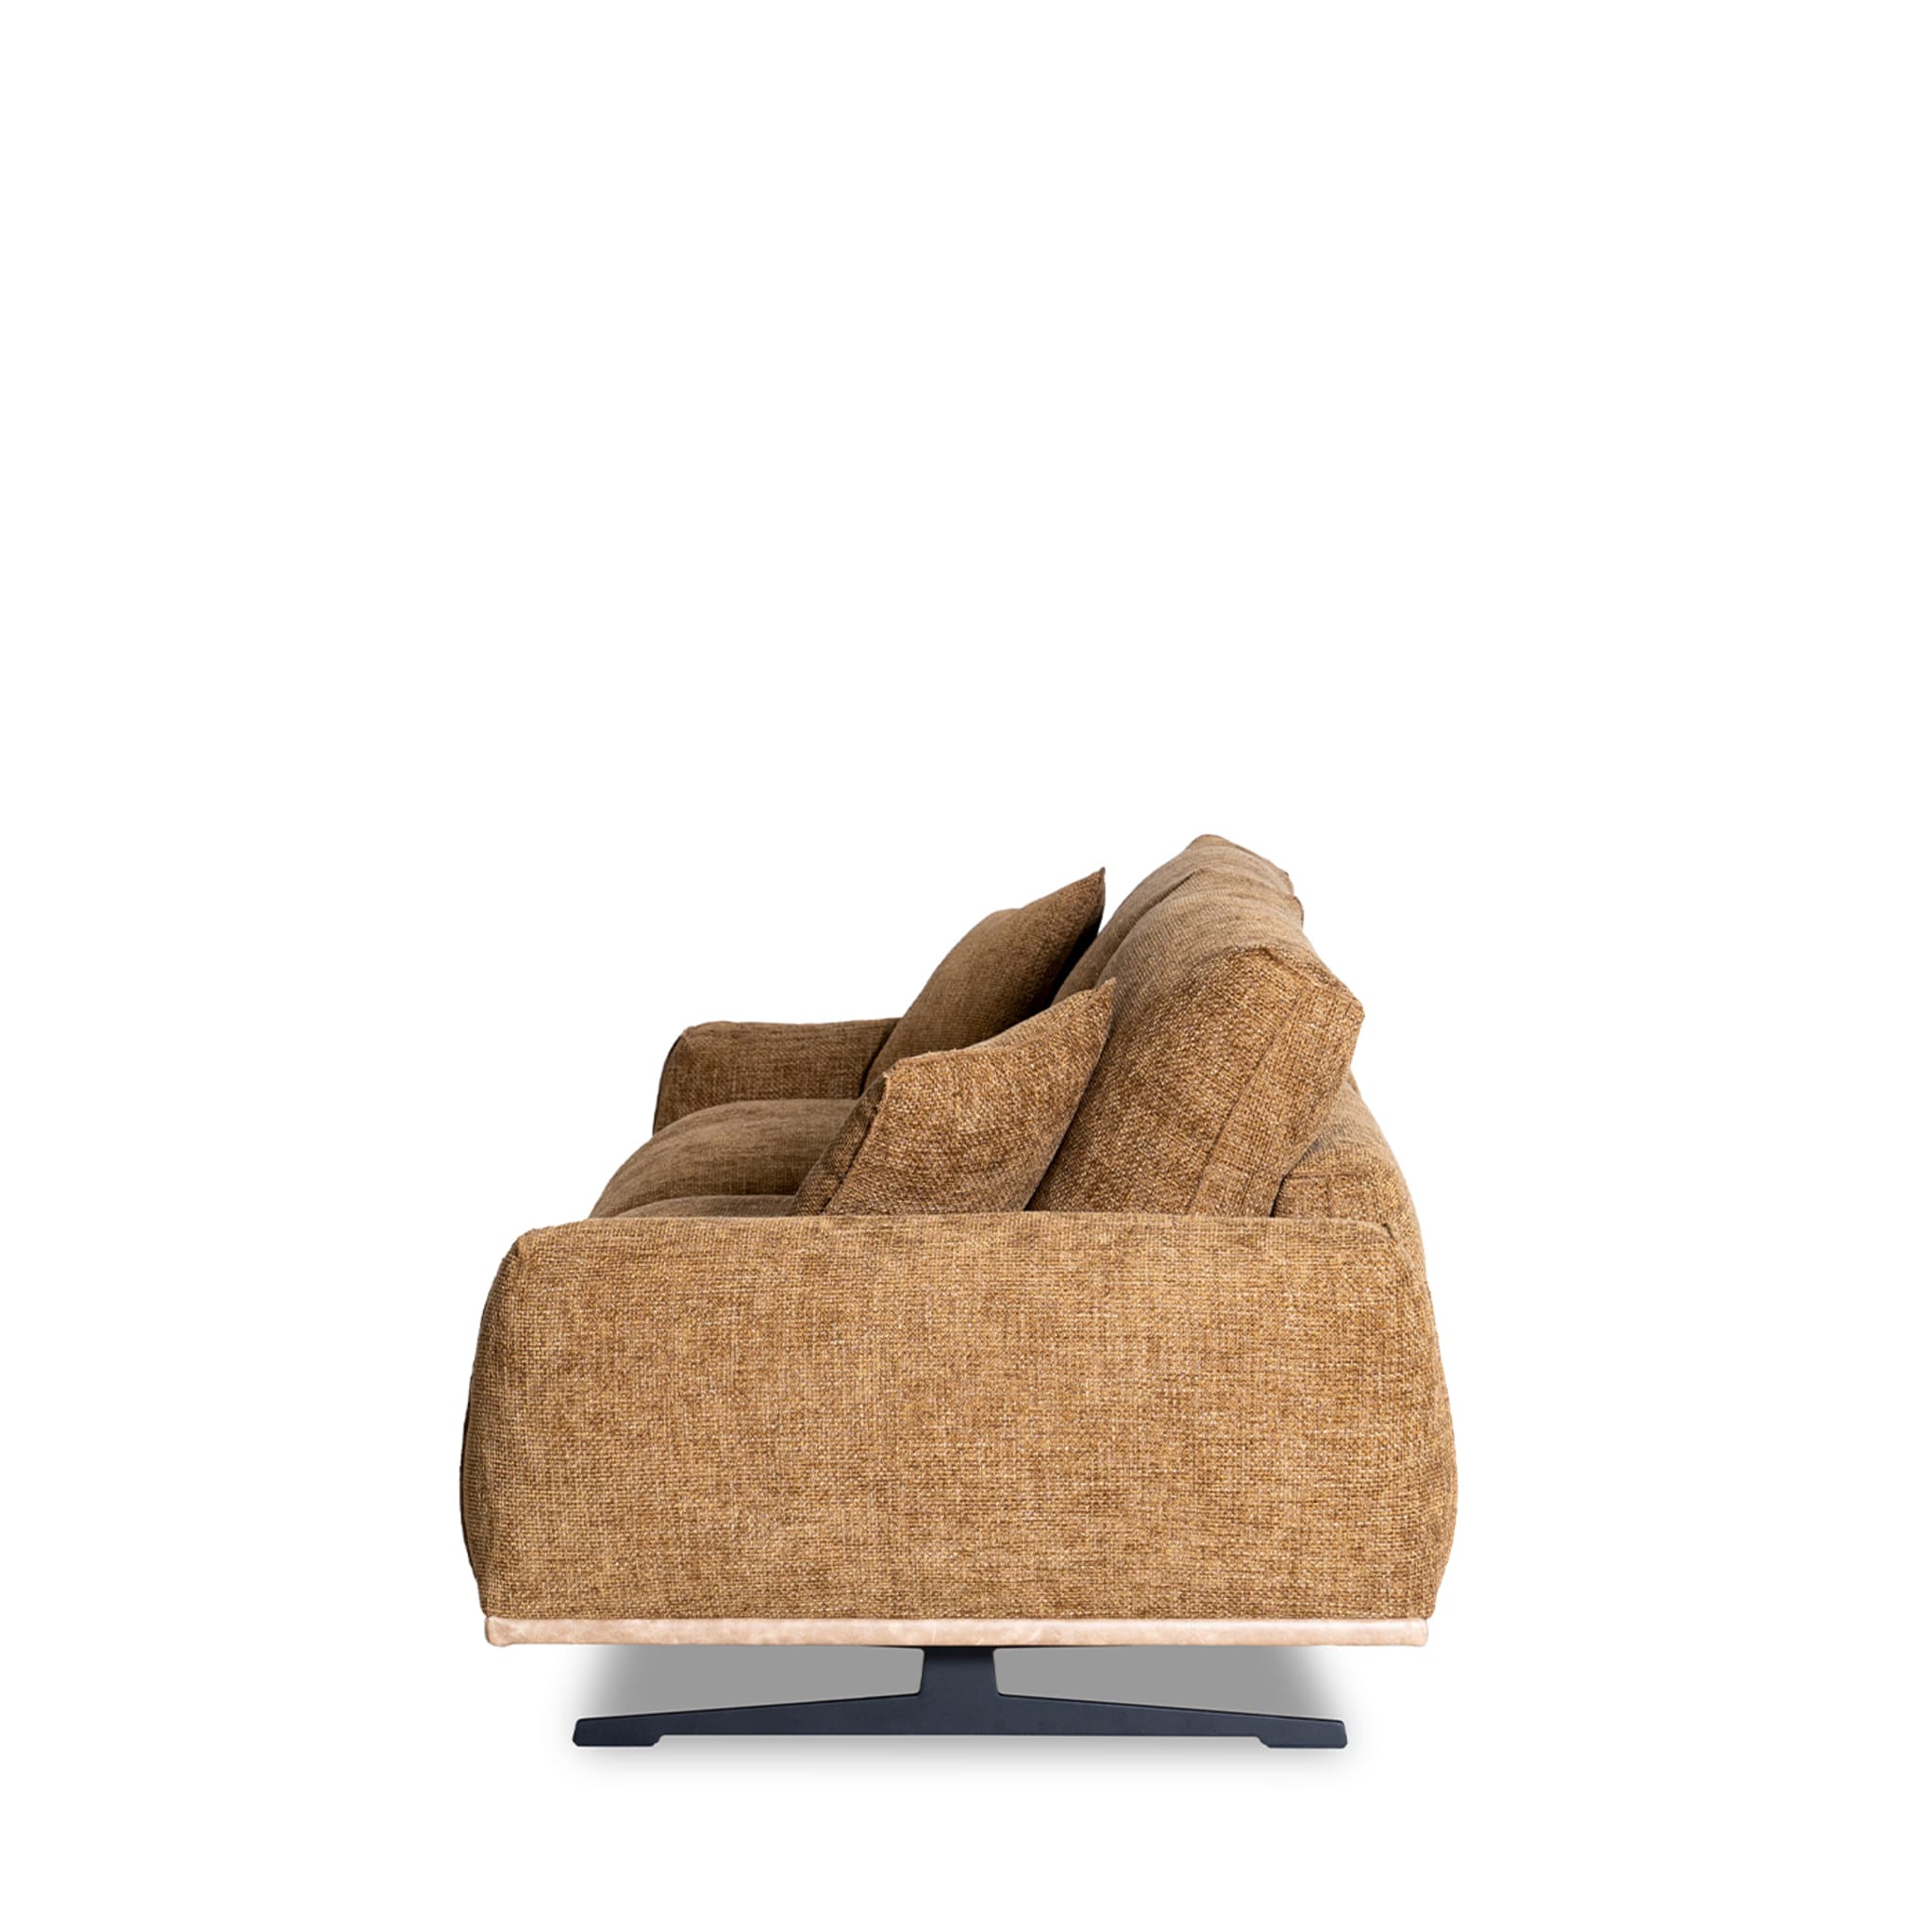 Boboli 2-Seater Sofa by Marco and Giulio Mantellassi - Alternative view 2